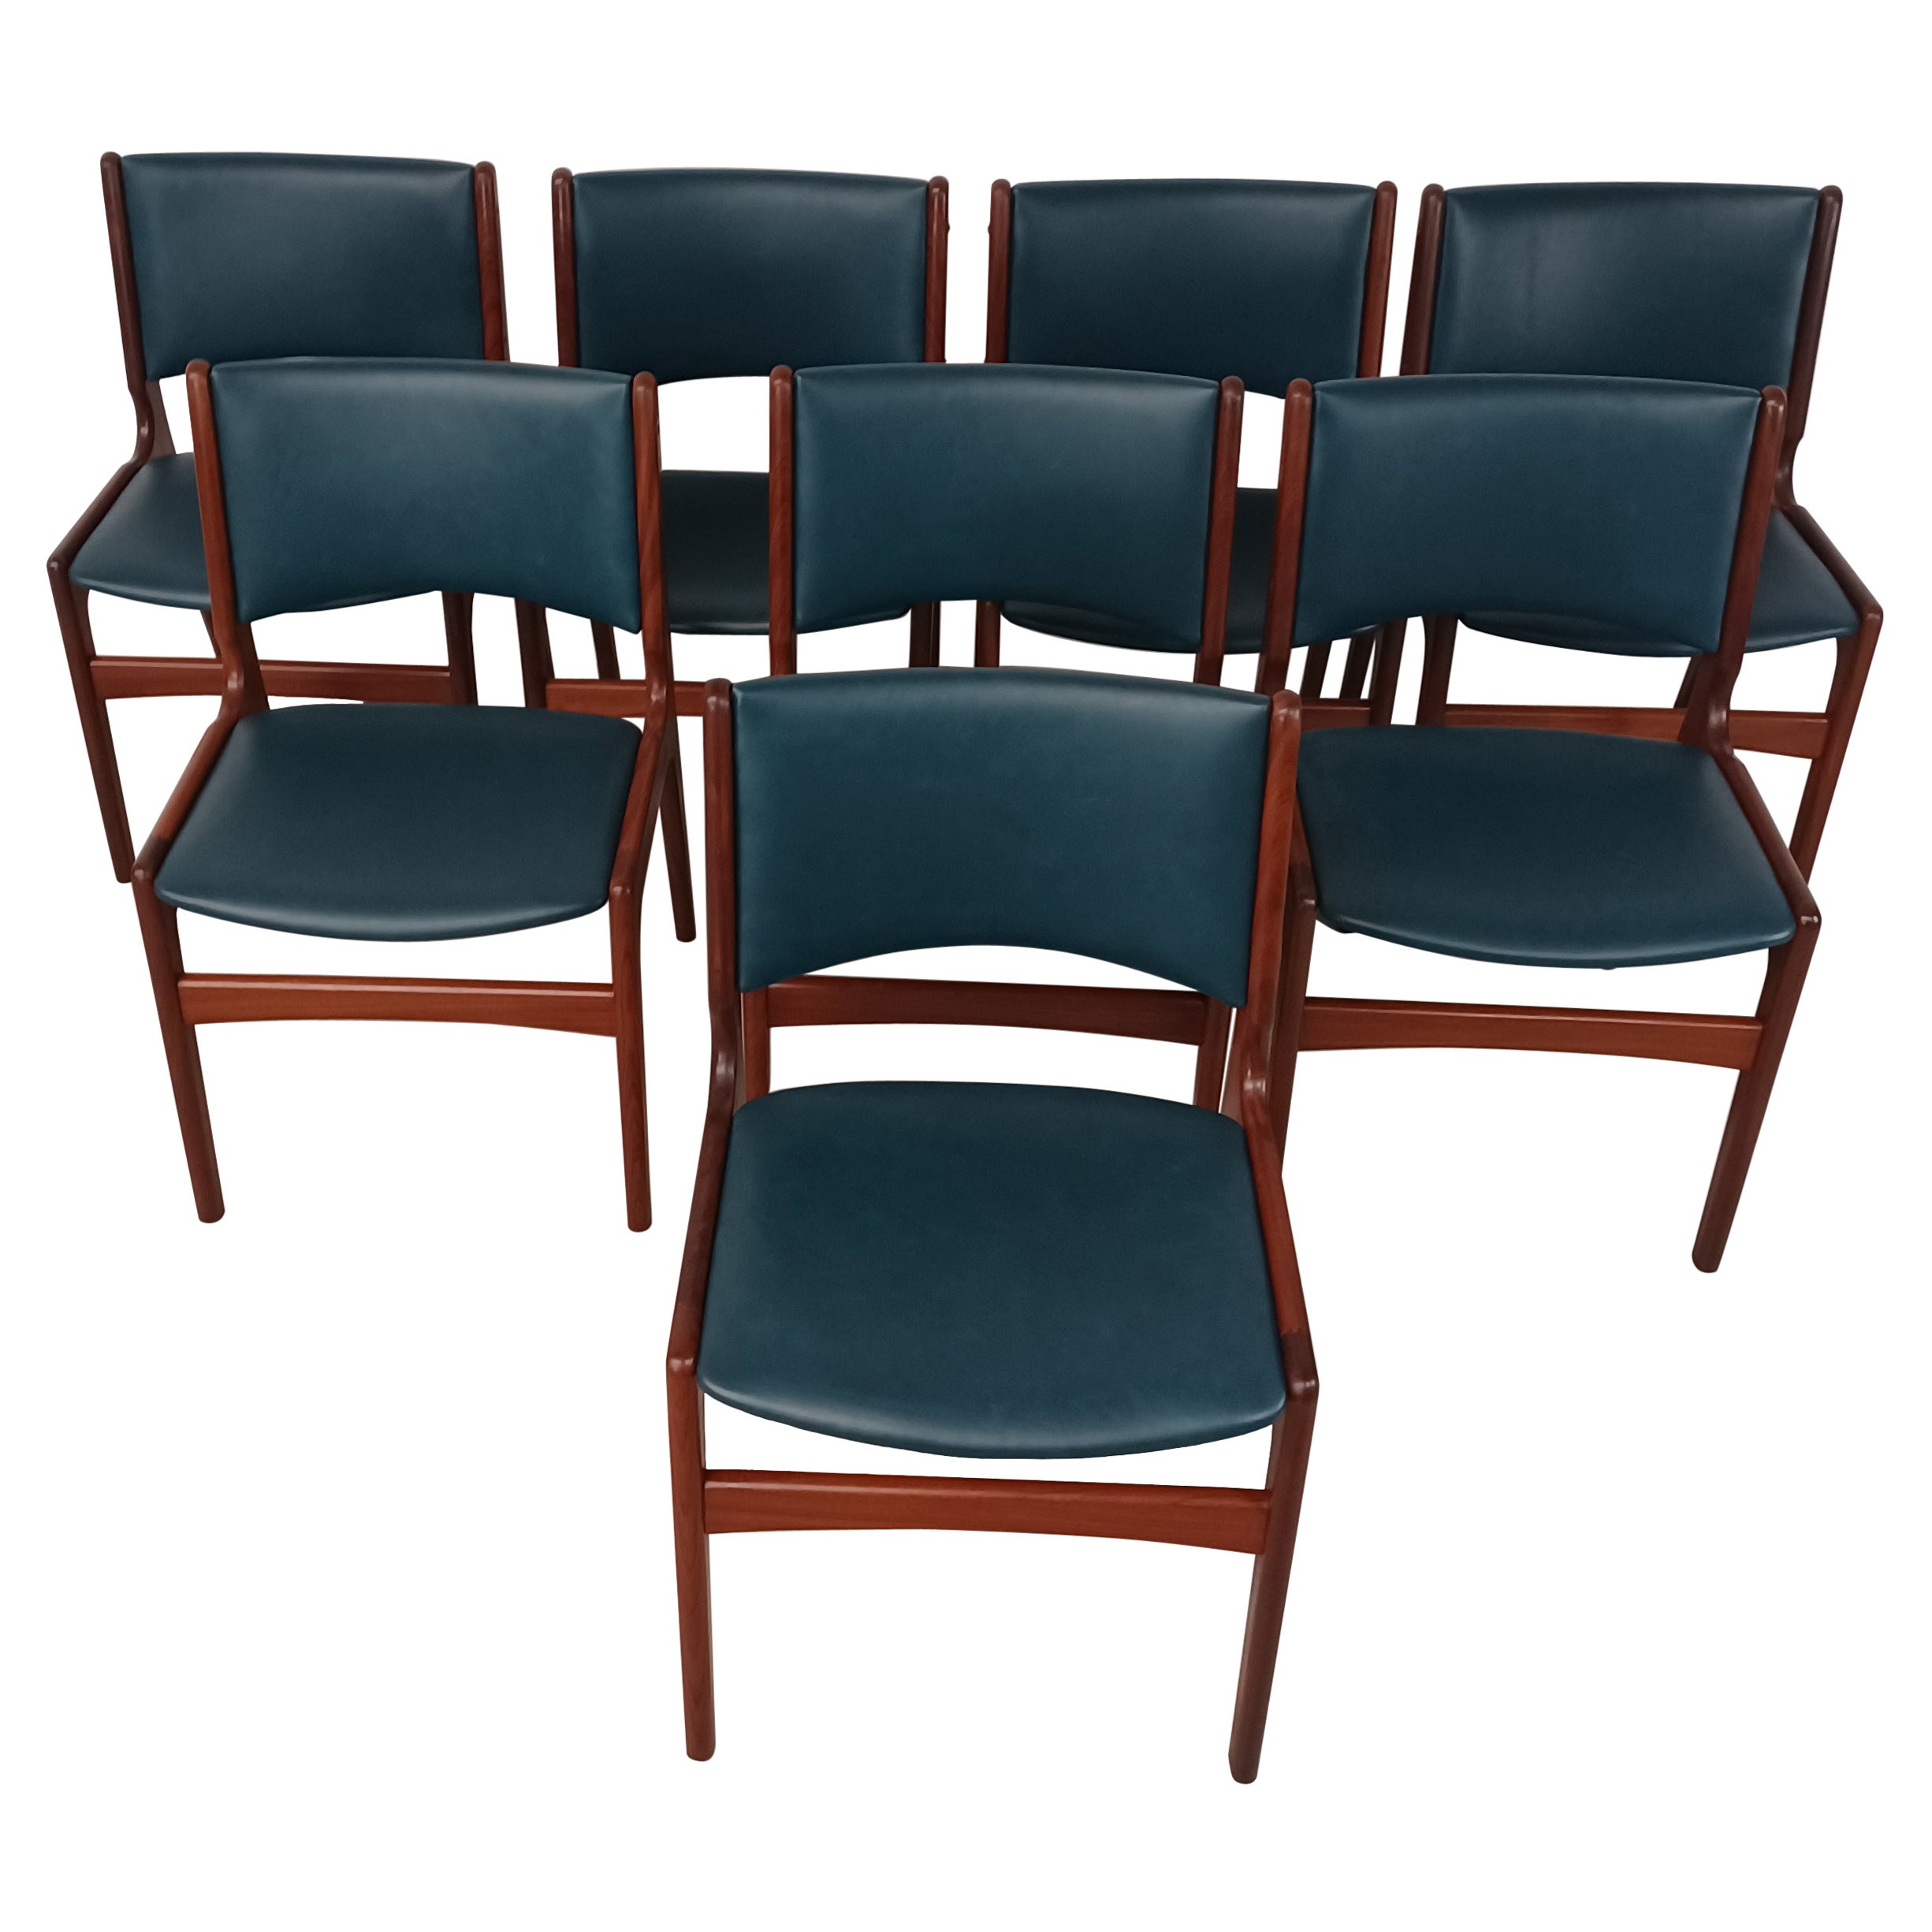 Ensemble de huit chaises de salle à manger en teck Erik Buch entièrement restaurées, tapissées sur mesure en vente